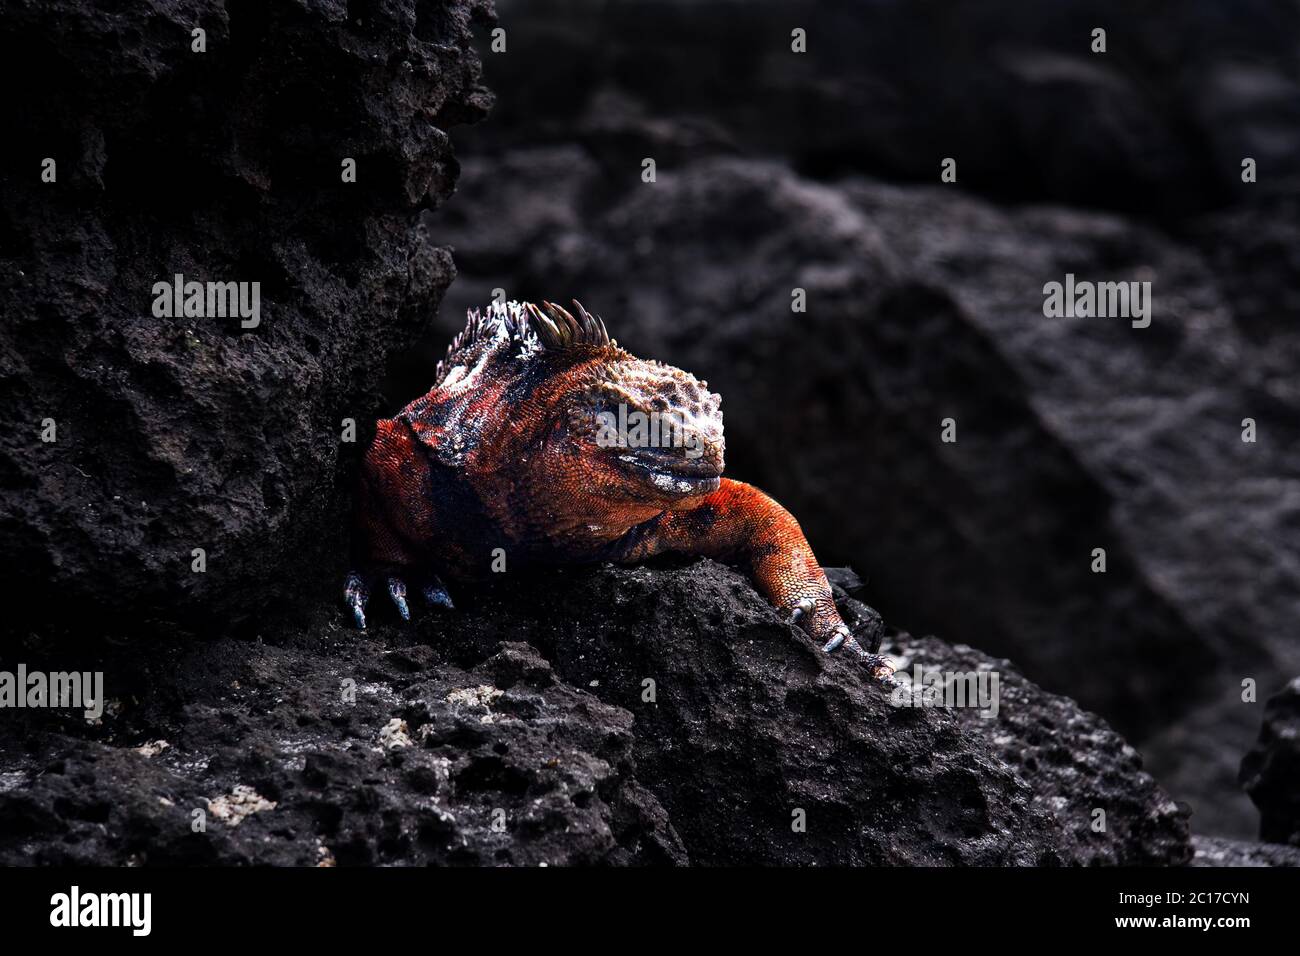 Iguana on black rocks. Stock Photo